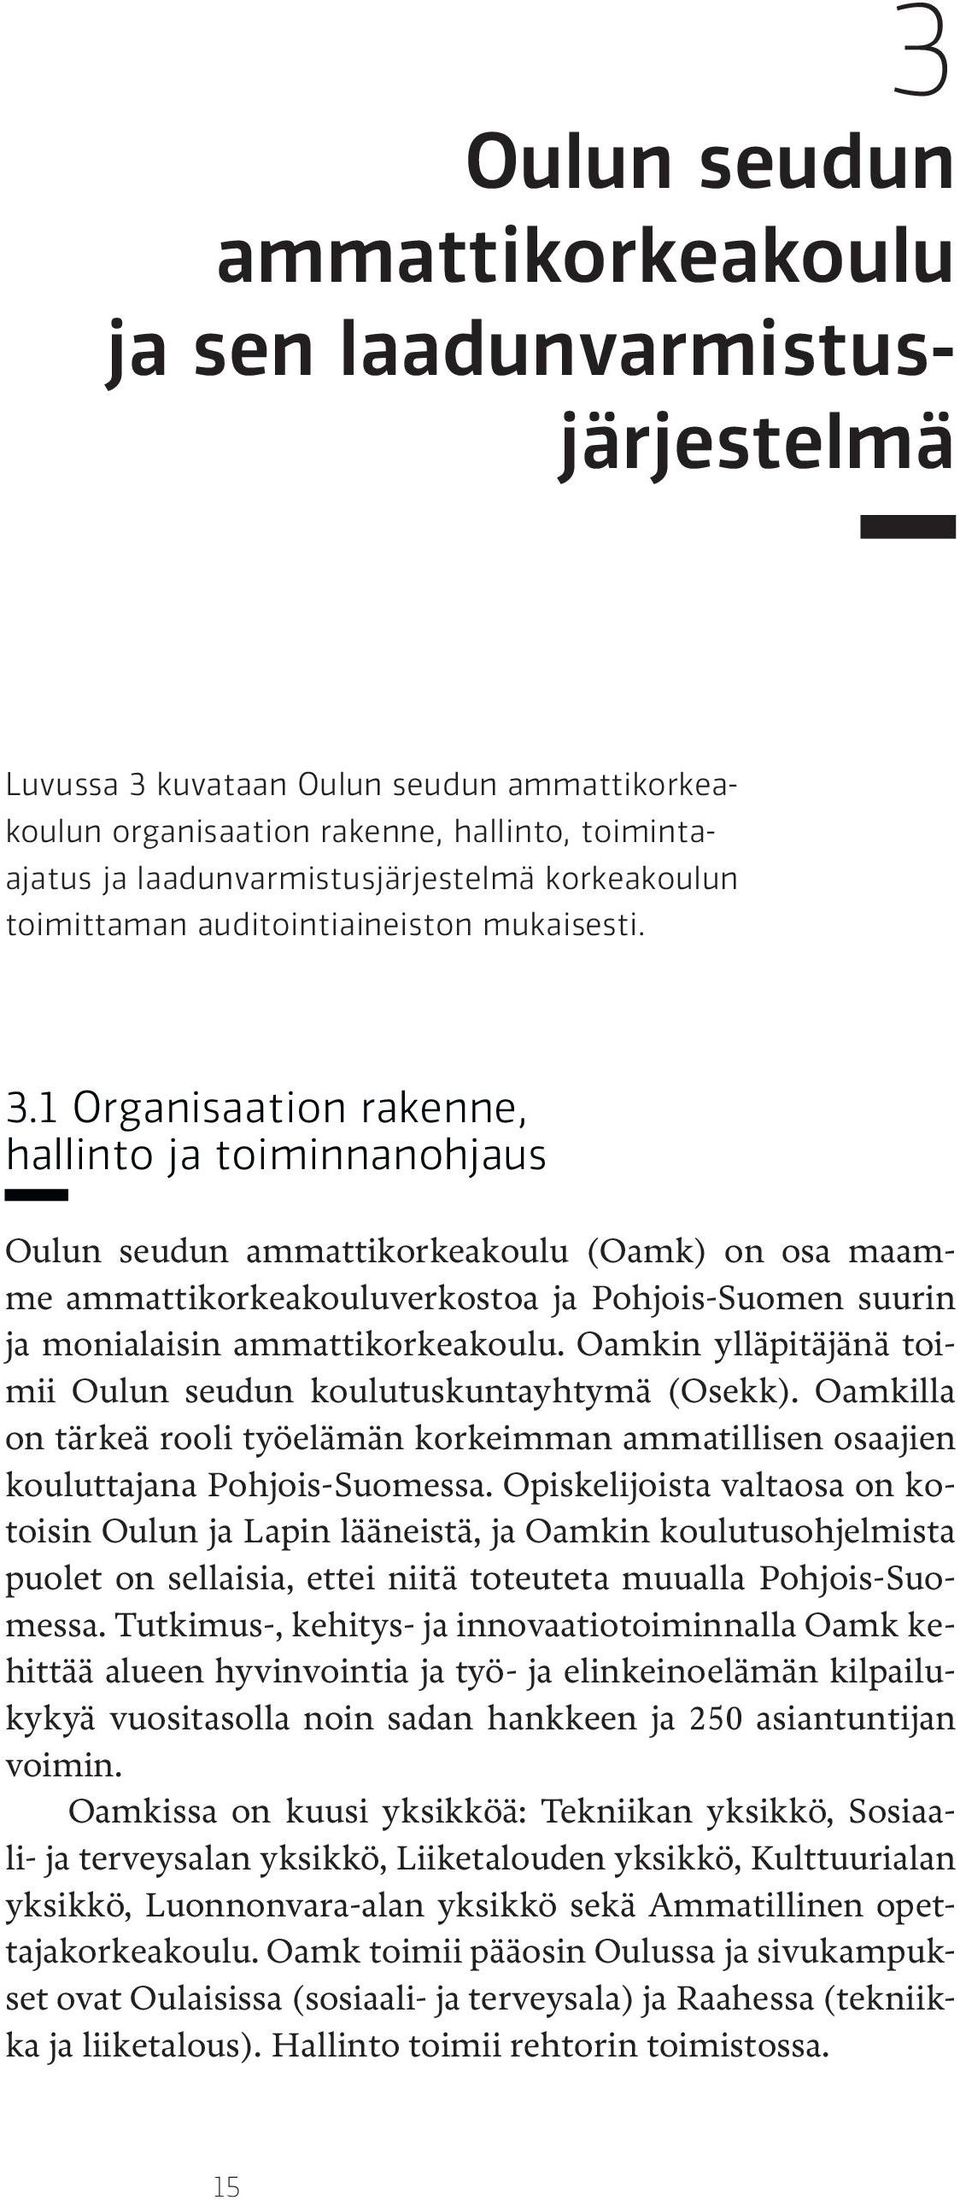 1 Organisaation rakenne, hallinto ja toiminnanohjaus Oulun seudun ammattikorkeakoulu (Oamk) on osa maamme ammattikorkeakouluverkostoa ja Pohjois-Suomen suurin ja monialaisin ammattikorkeakoulu.